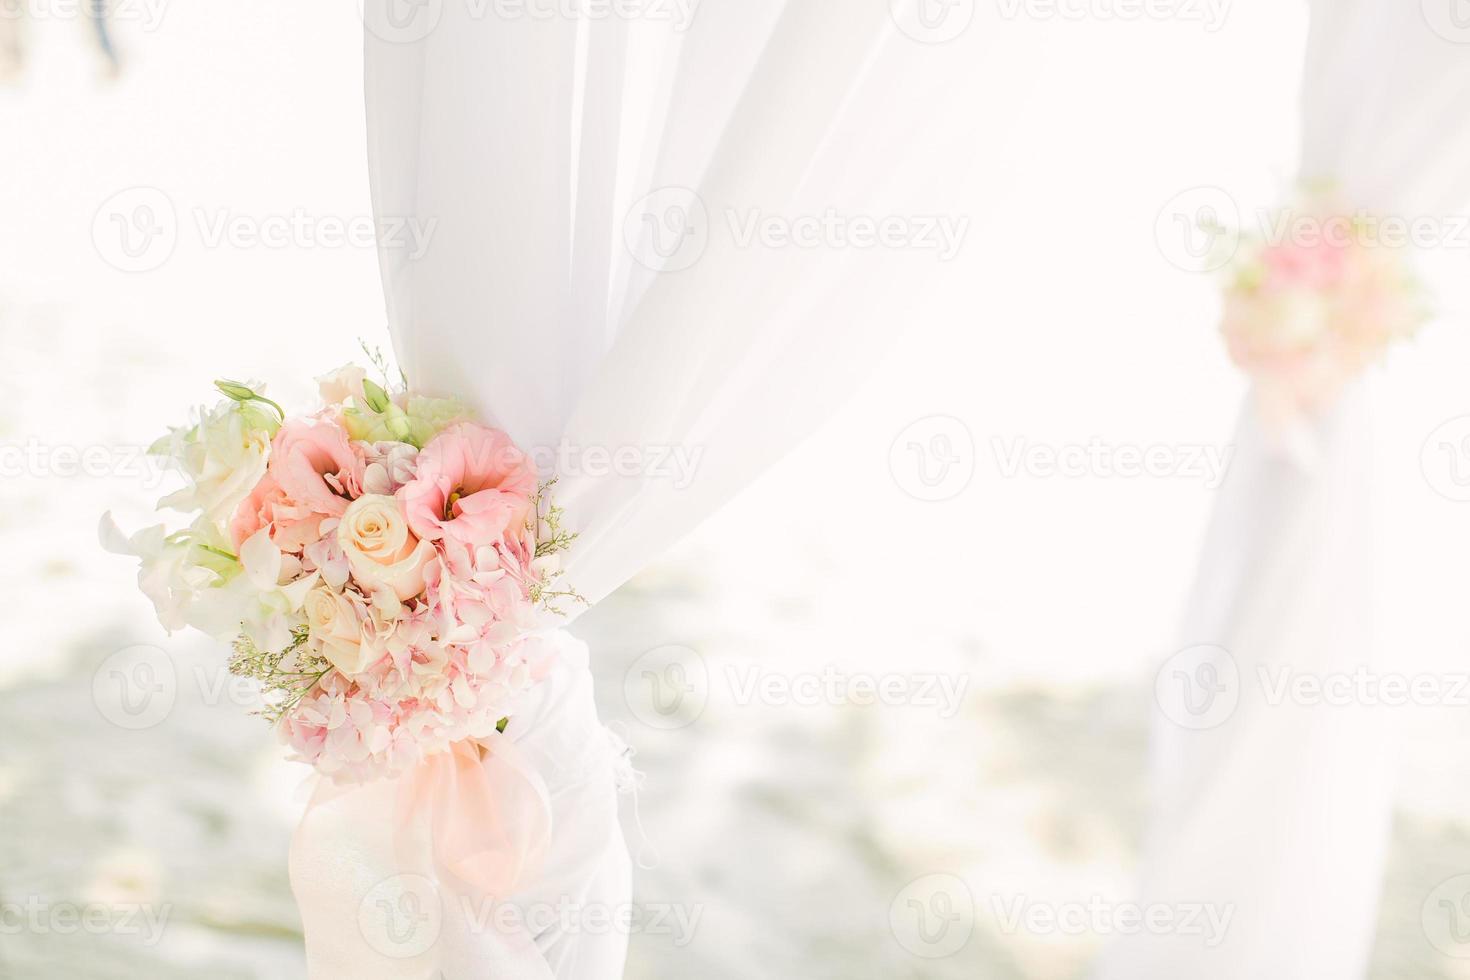 kleurrijk roze en lichtgroen bloemstuk vastgebonden aan een boog in een huwelijksceremonie foto